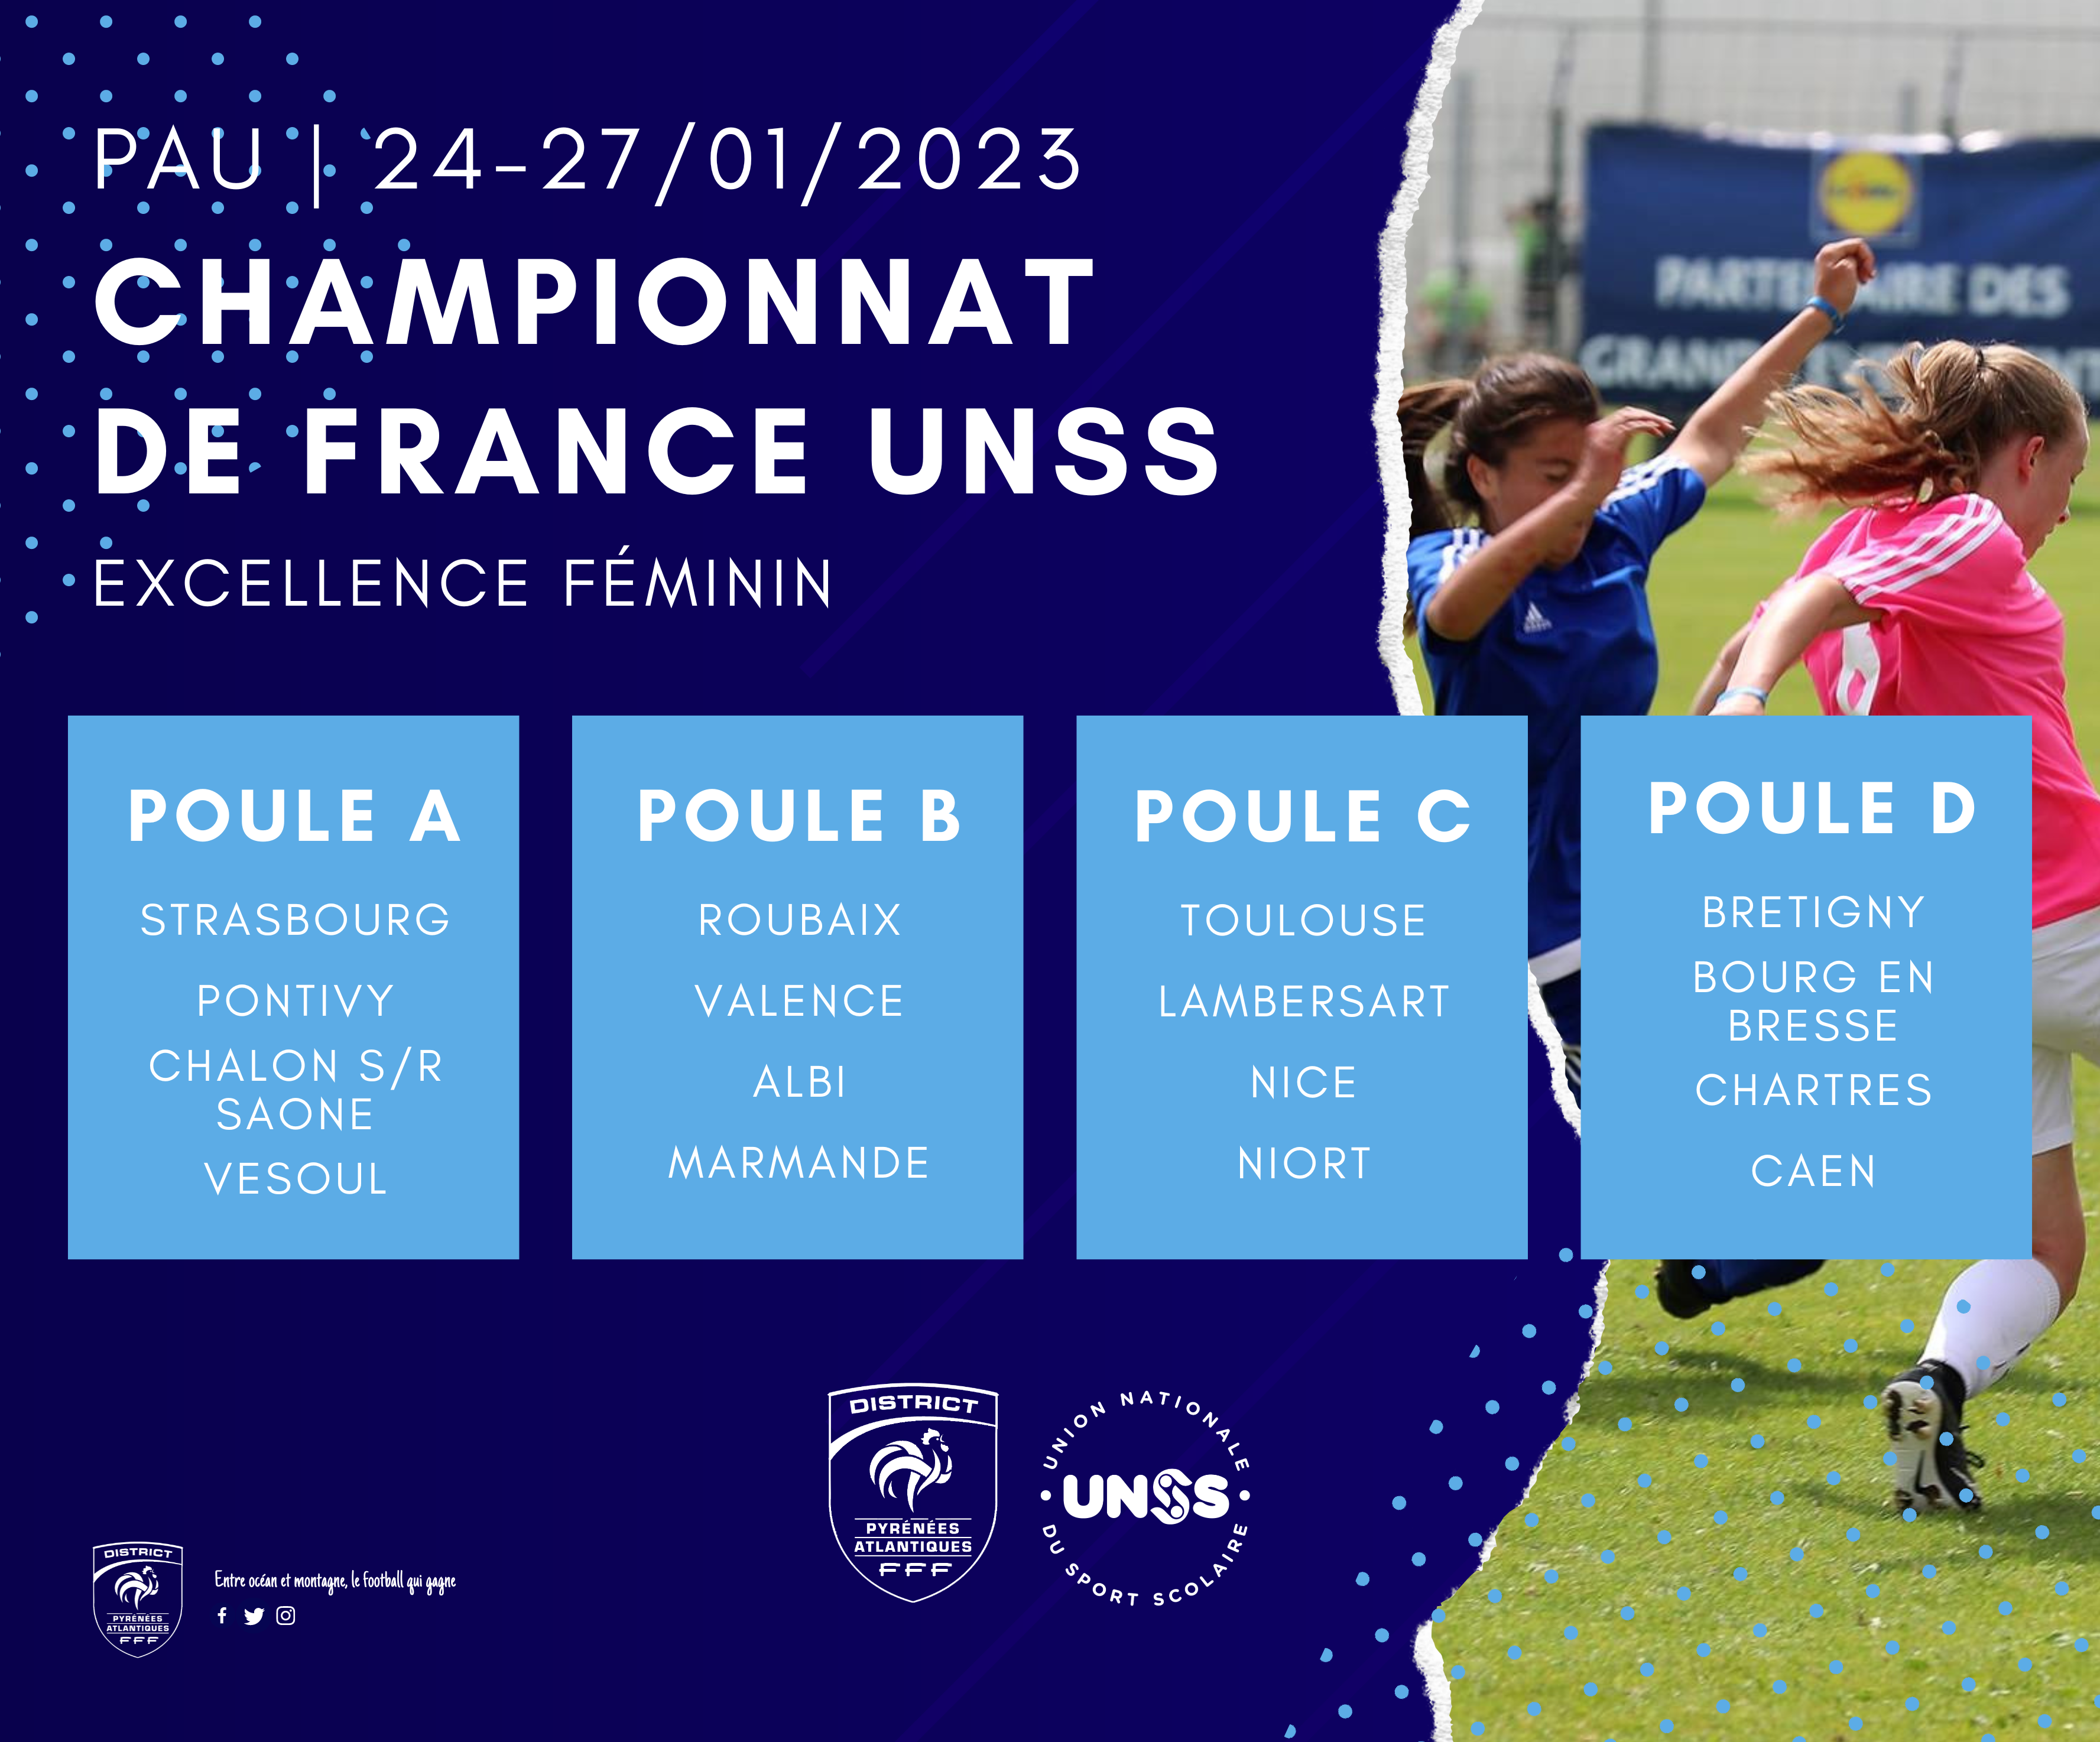 Le championnat de France UNSS Excellence Féminin sinvite à